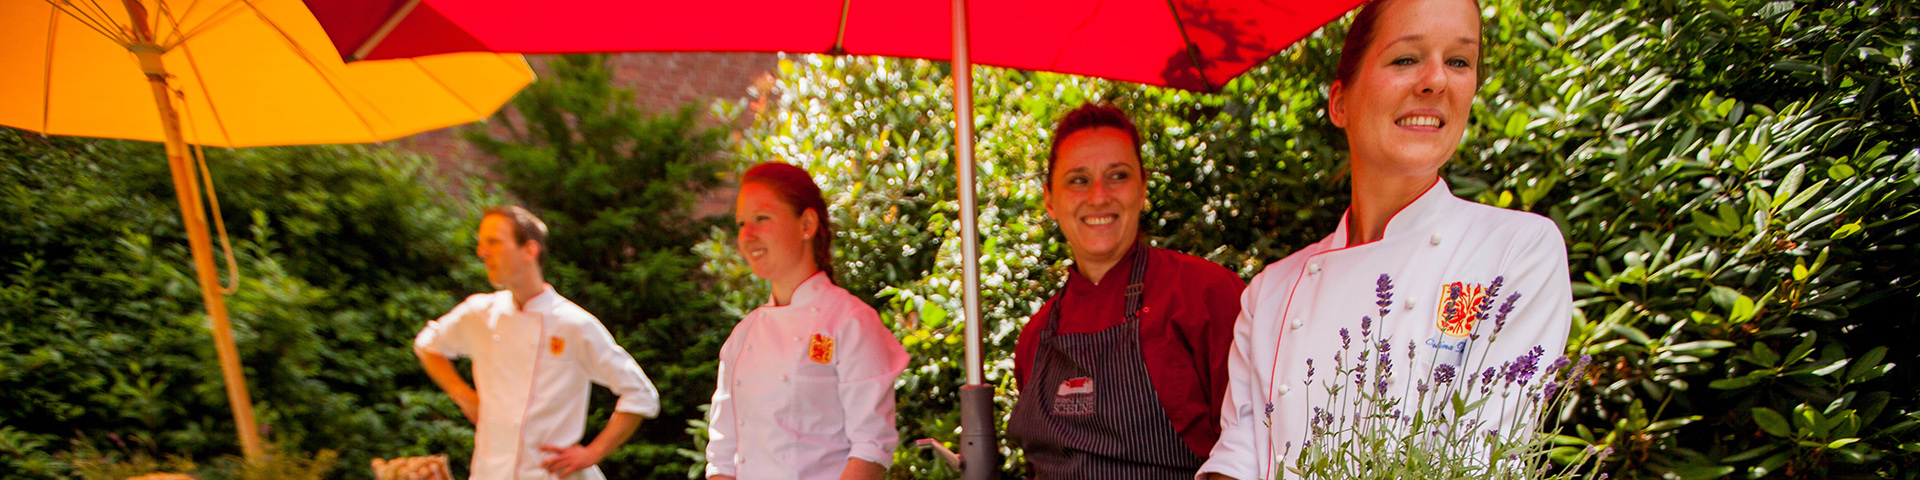 Das Team des Marburger Café Rosenpark auf der Landpartie Dagobertshausen 2016